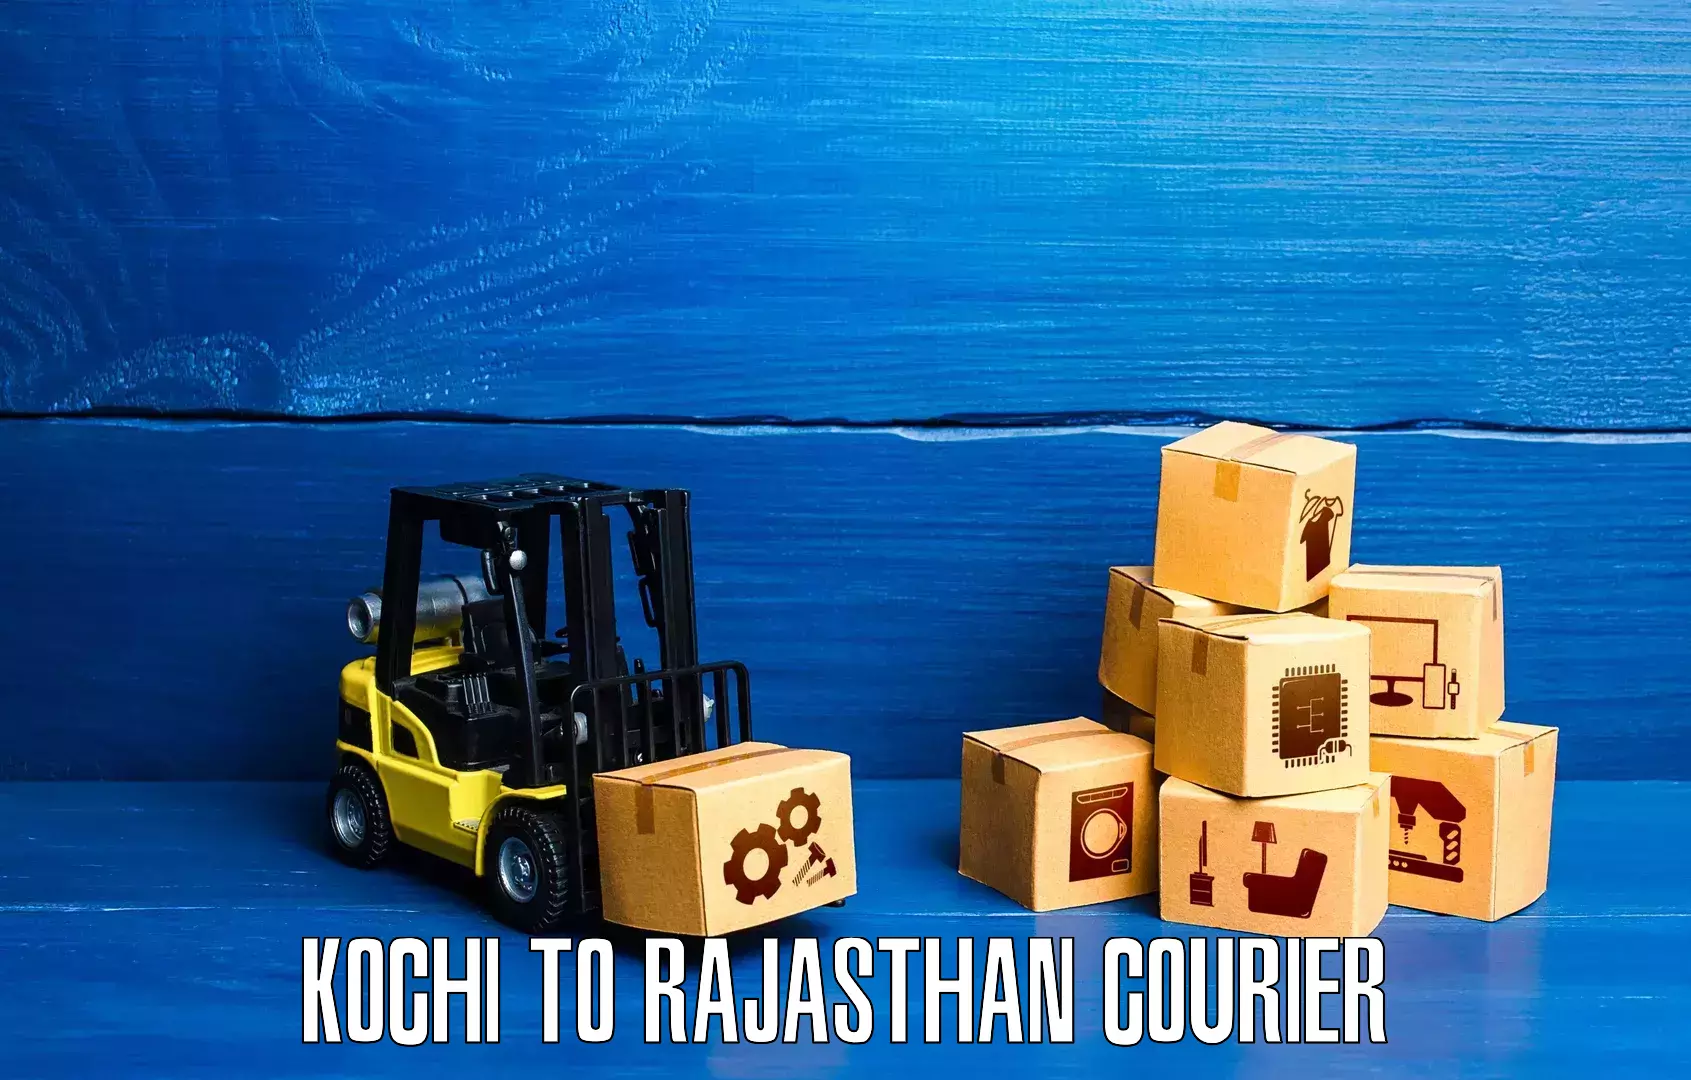 Cargo courier service Kochi to Sultana